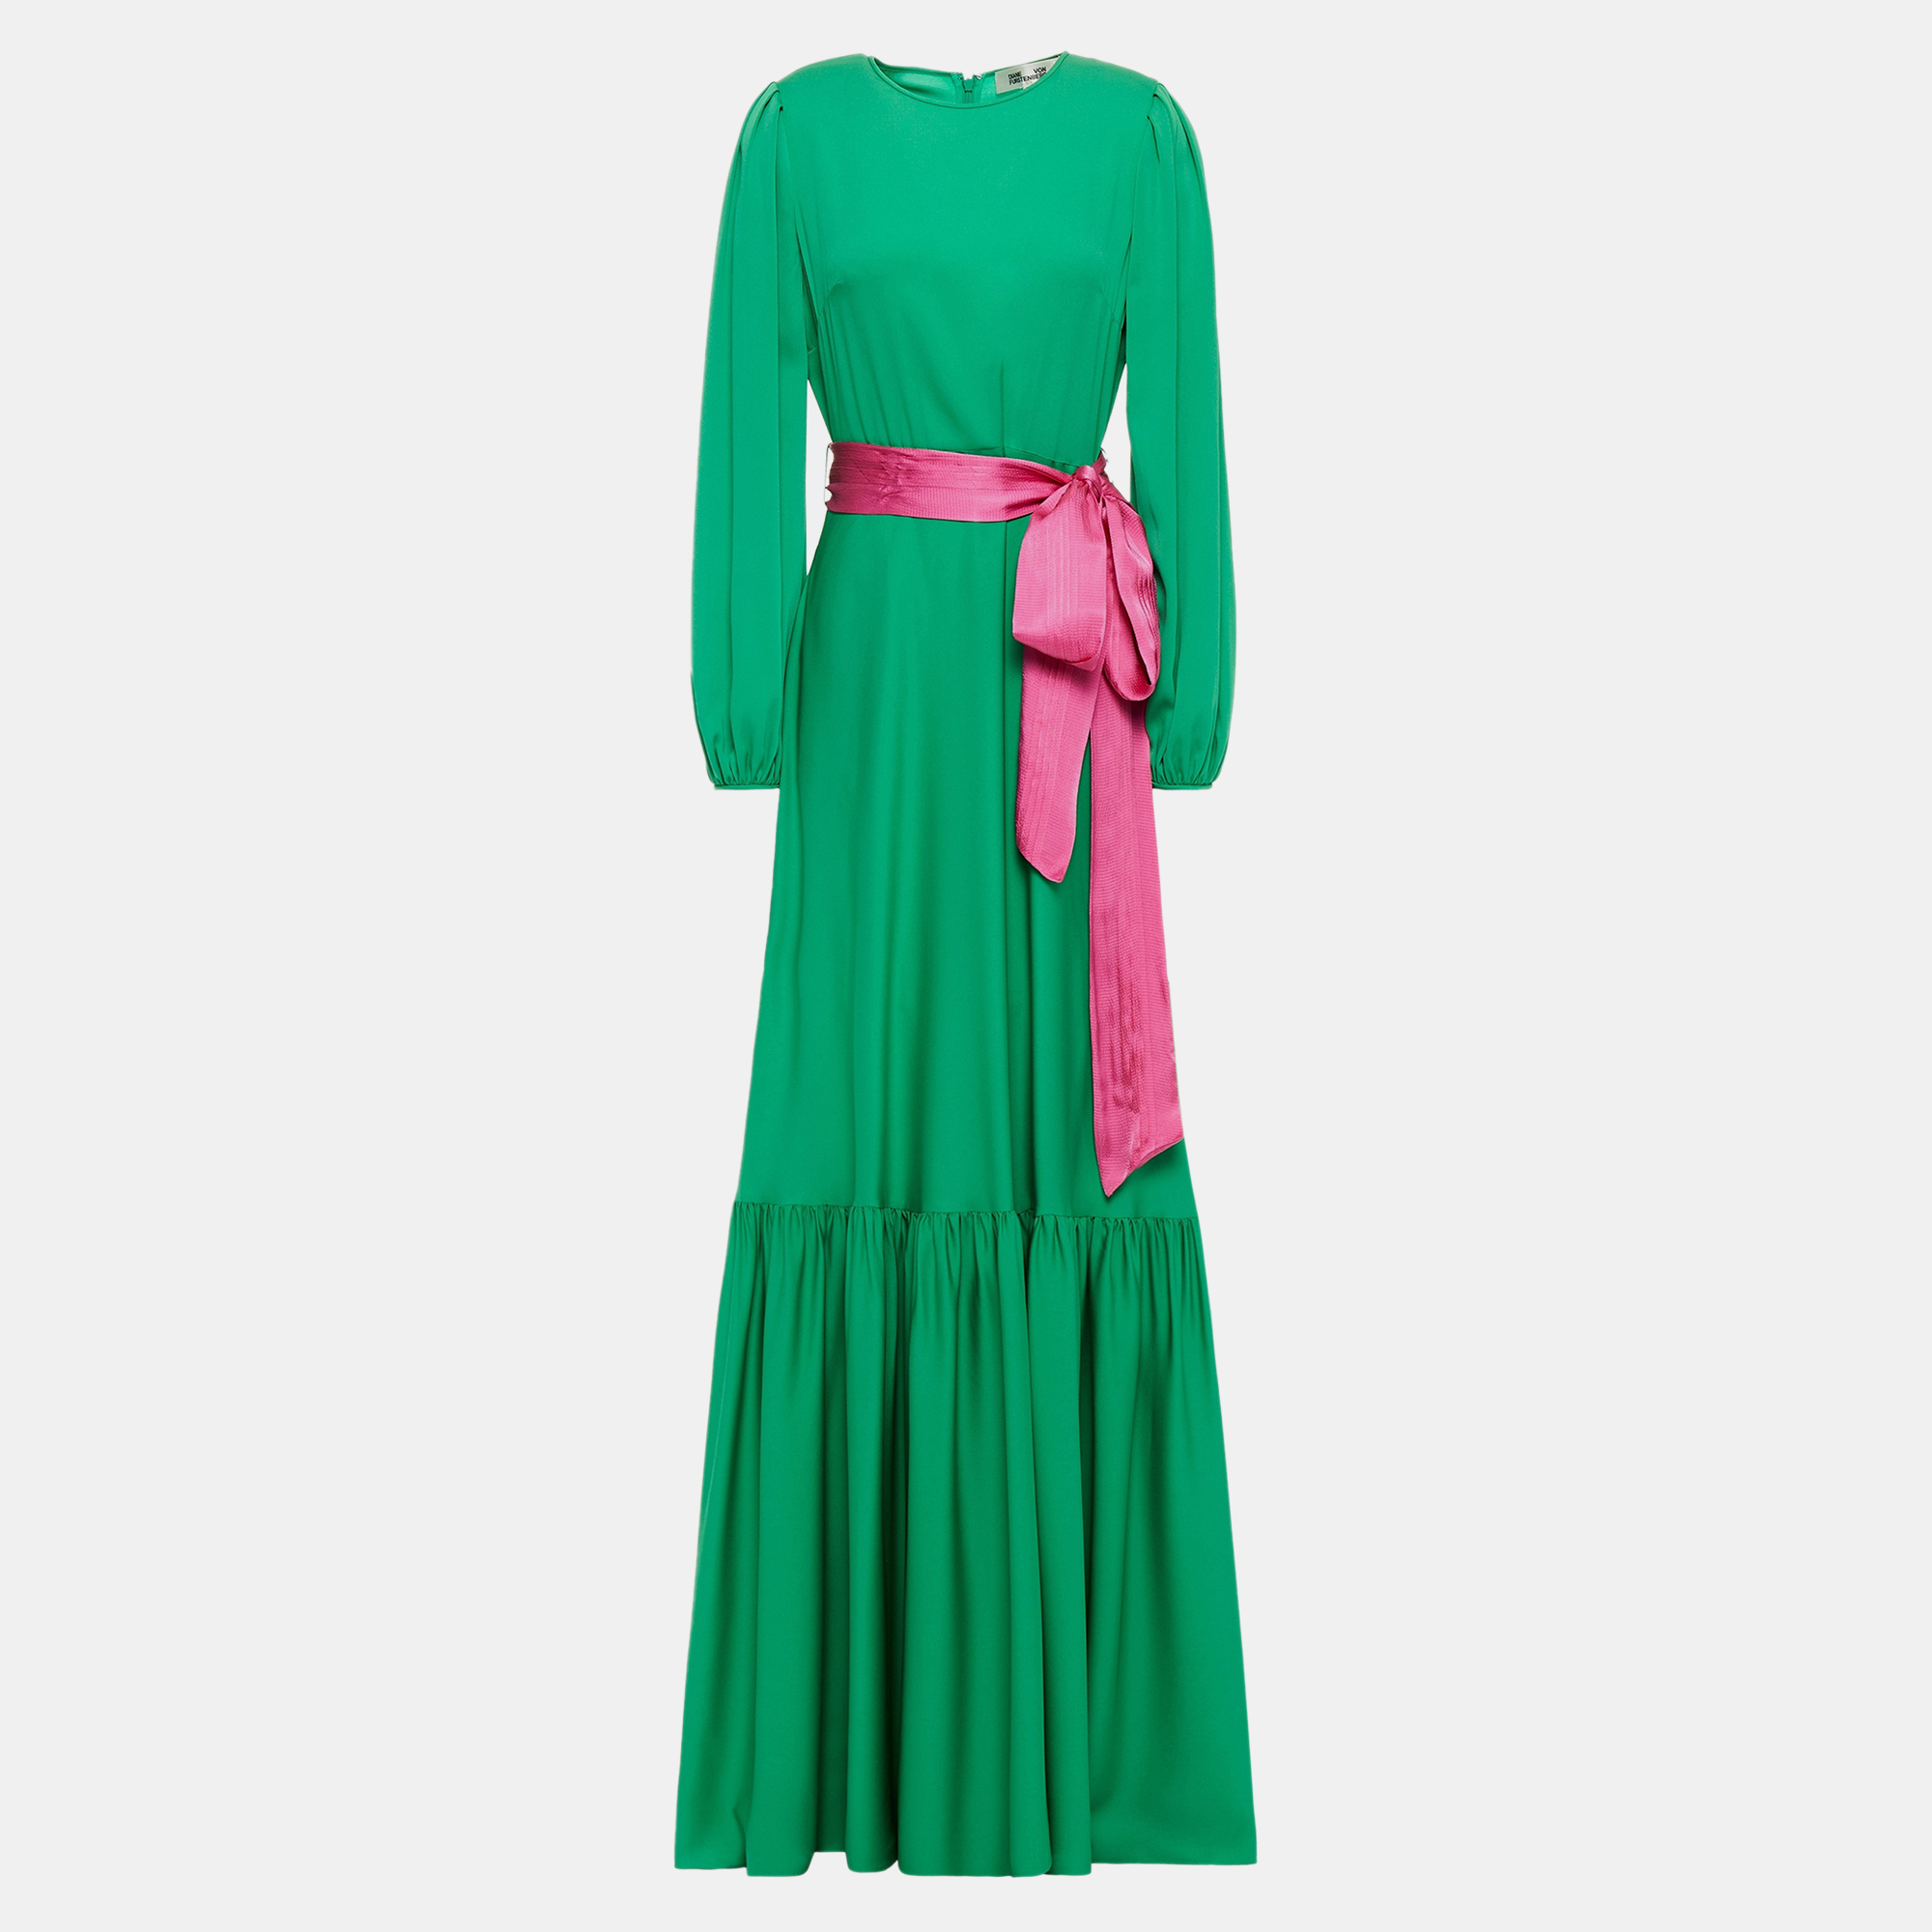 Diane von furstenberg green/pink silk maxi dress size 10